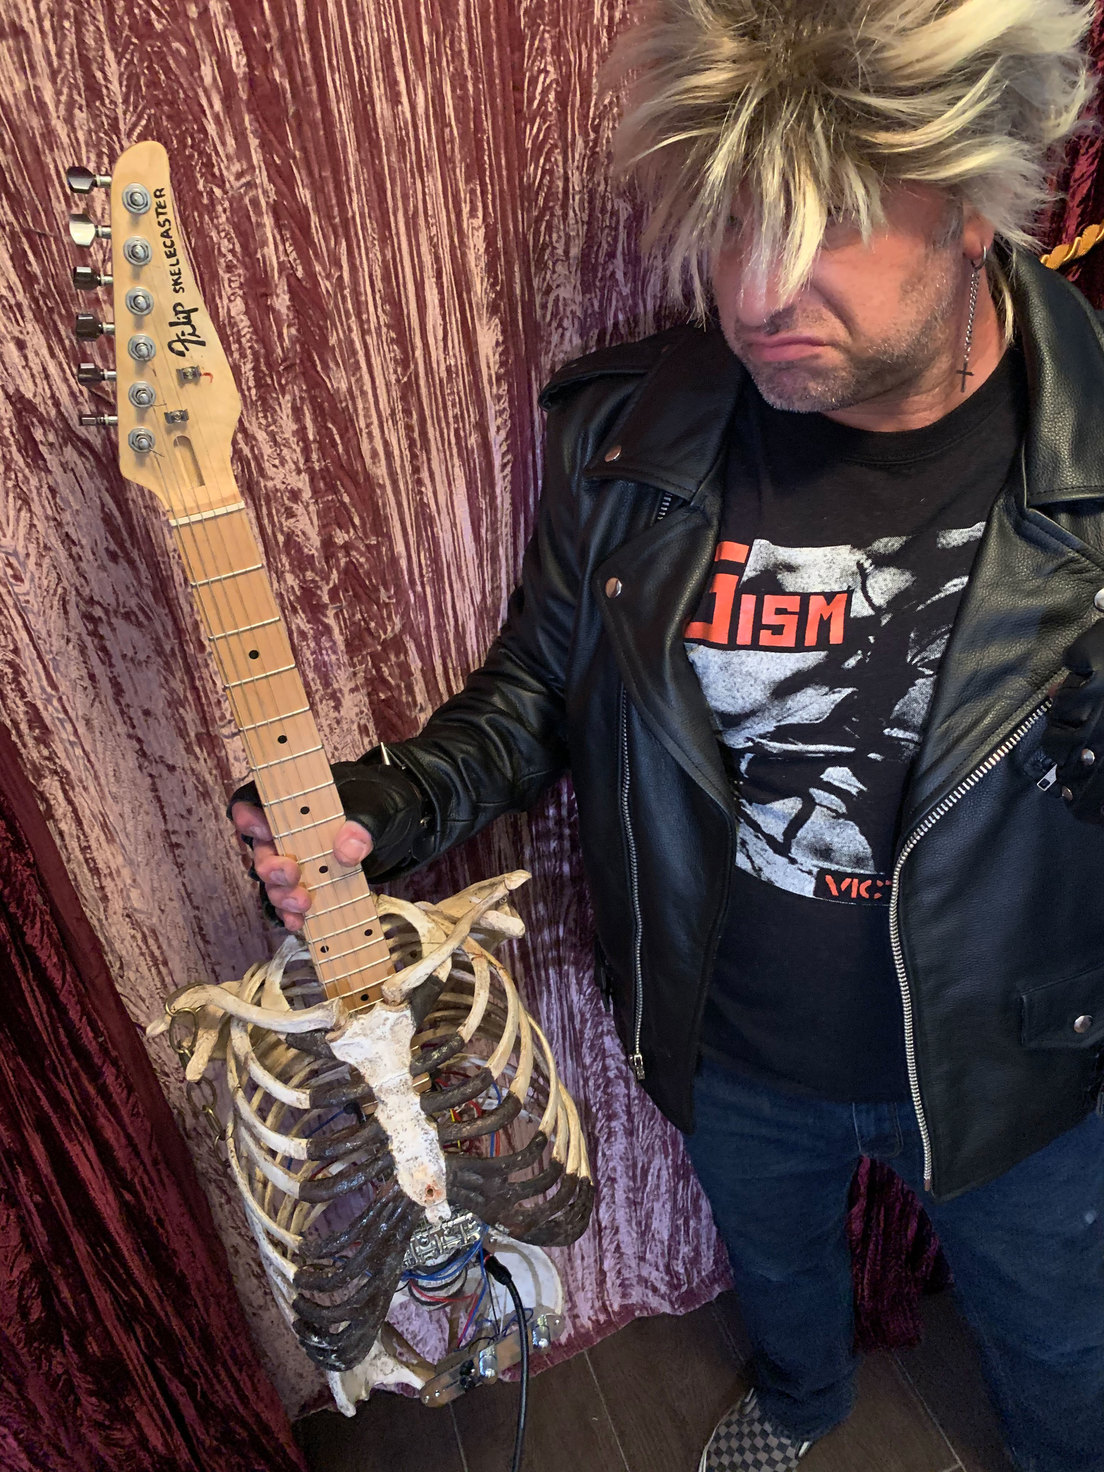 guitarra eléctrica con un esqueleto - guitarra eléctrica con un esqueleto